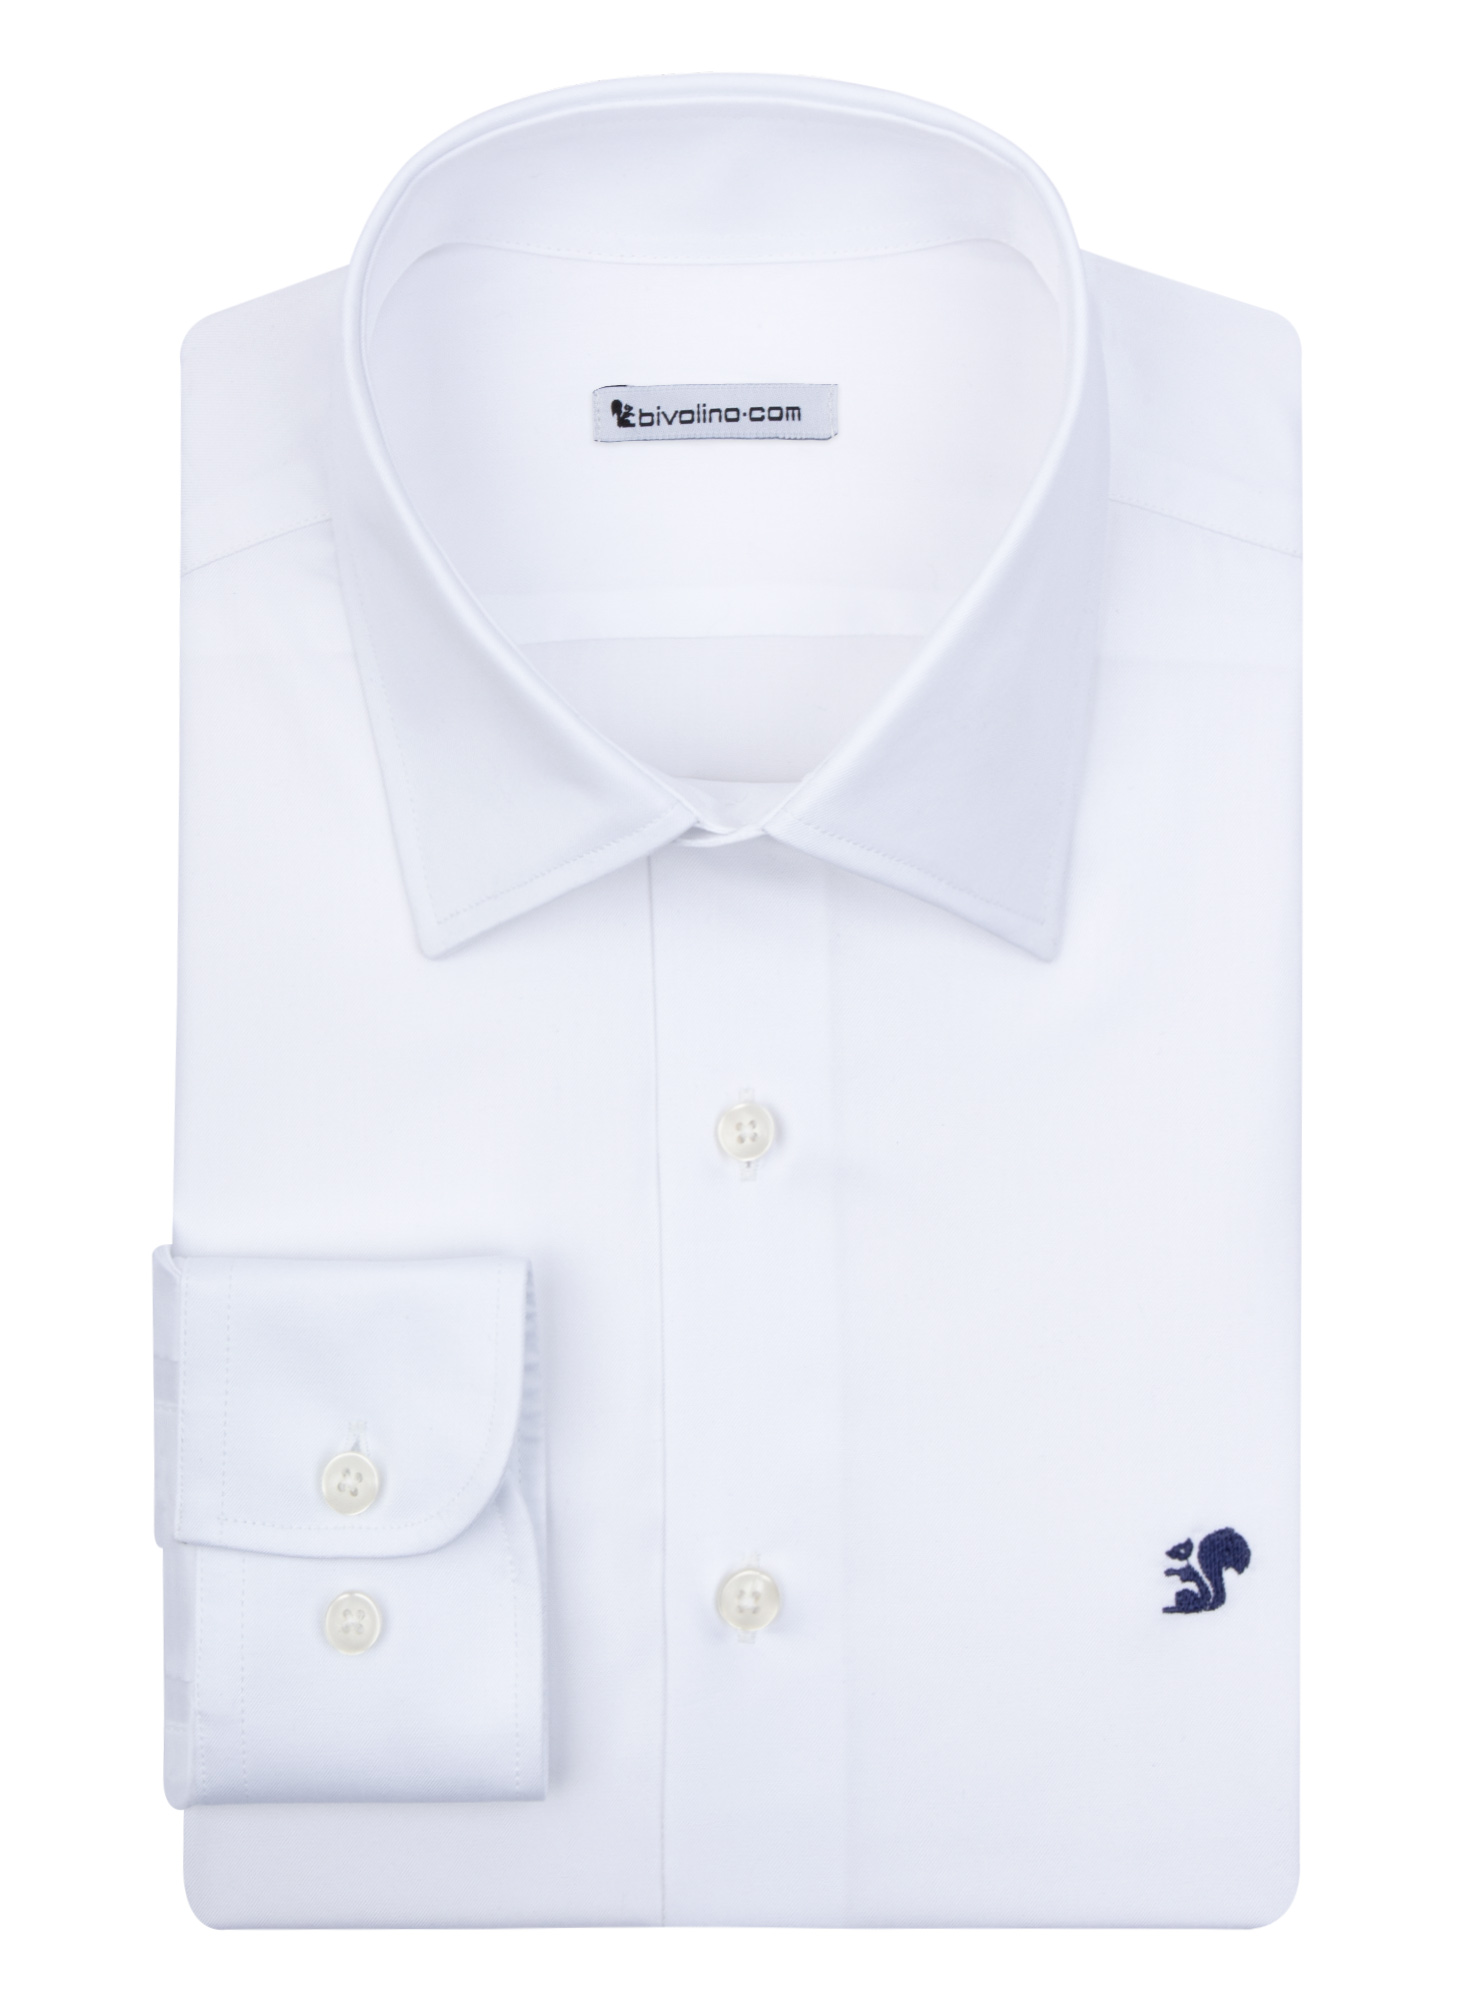 VIBO VALENTIA - Sarga de algodón egipcio de doble torsión blanca camisa de hombre - MARZI 1